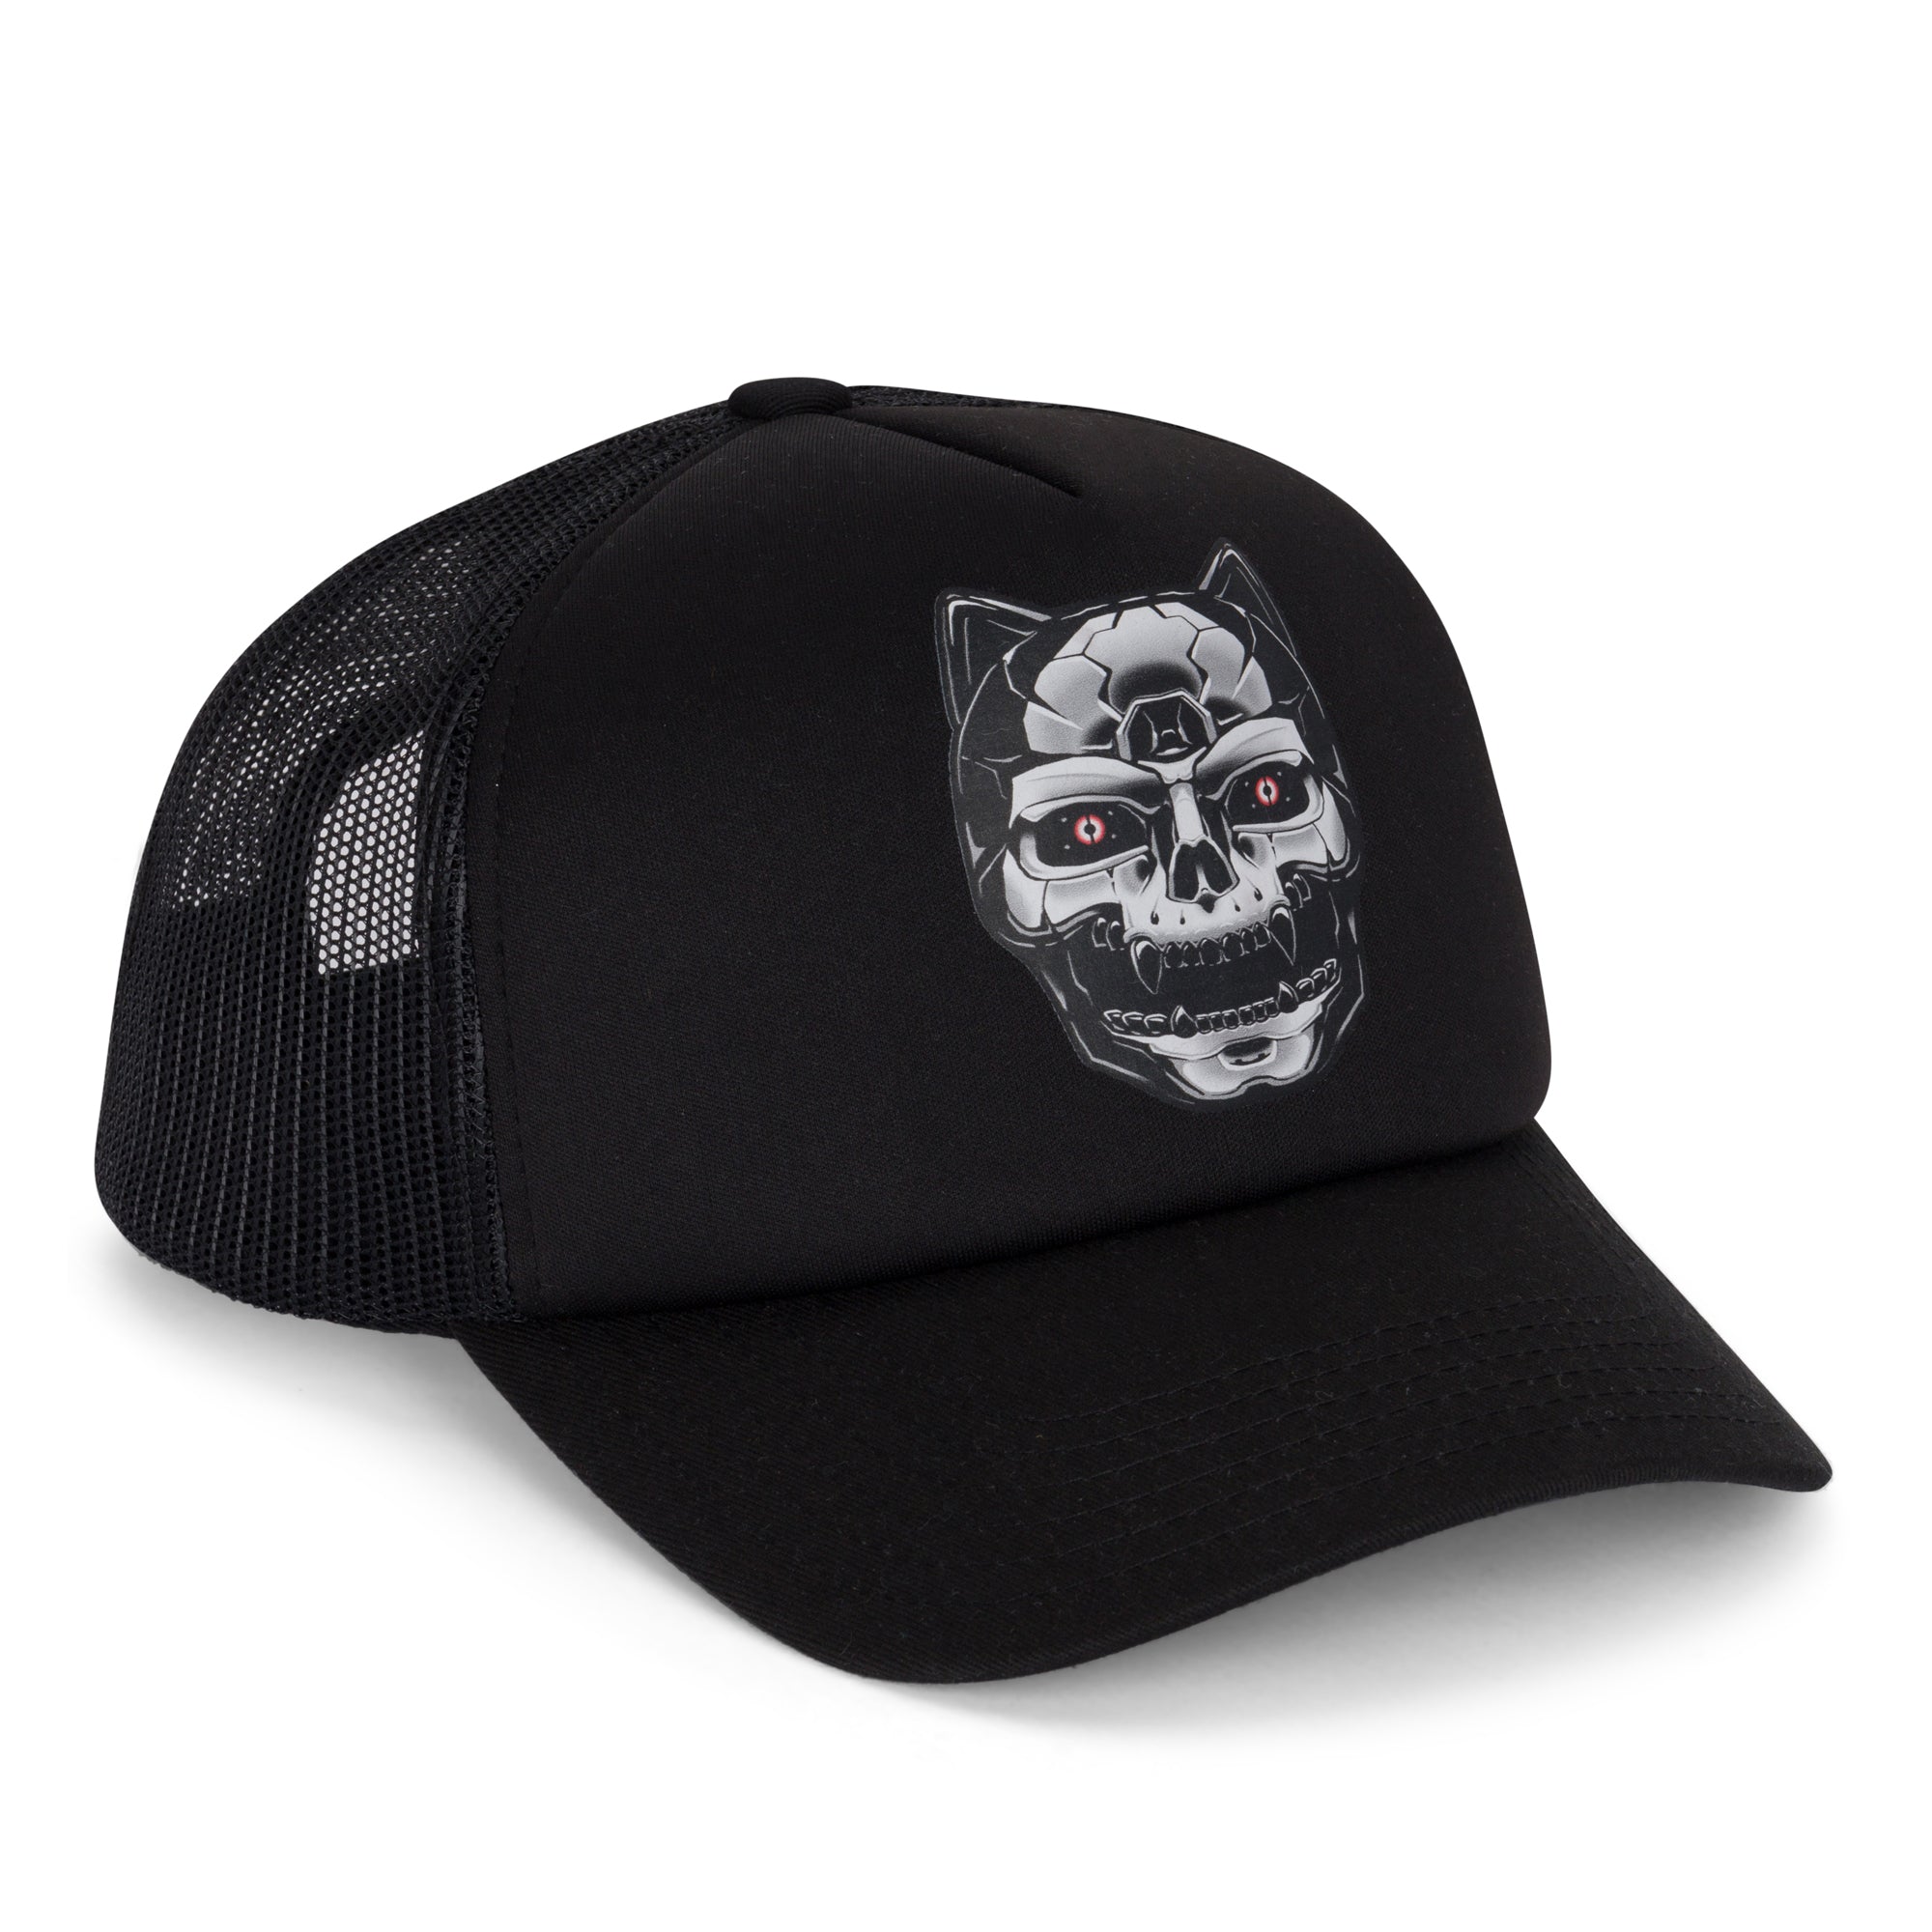 Nerminator 2.0 Trucker Hat (Black)